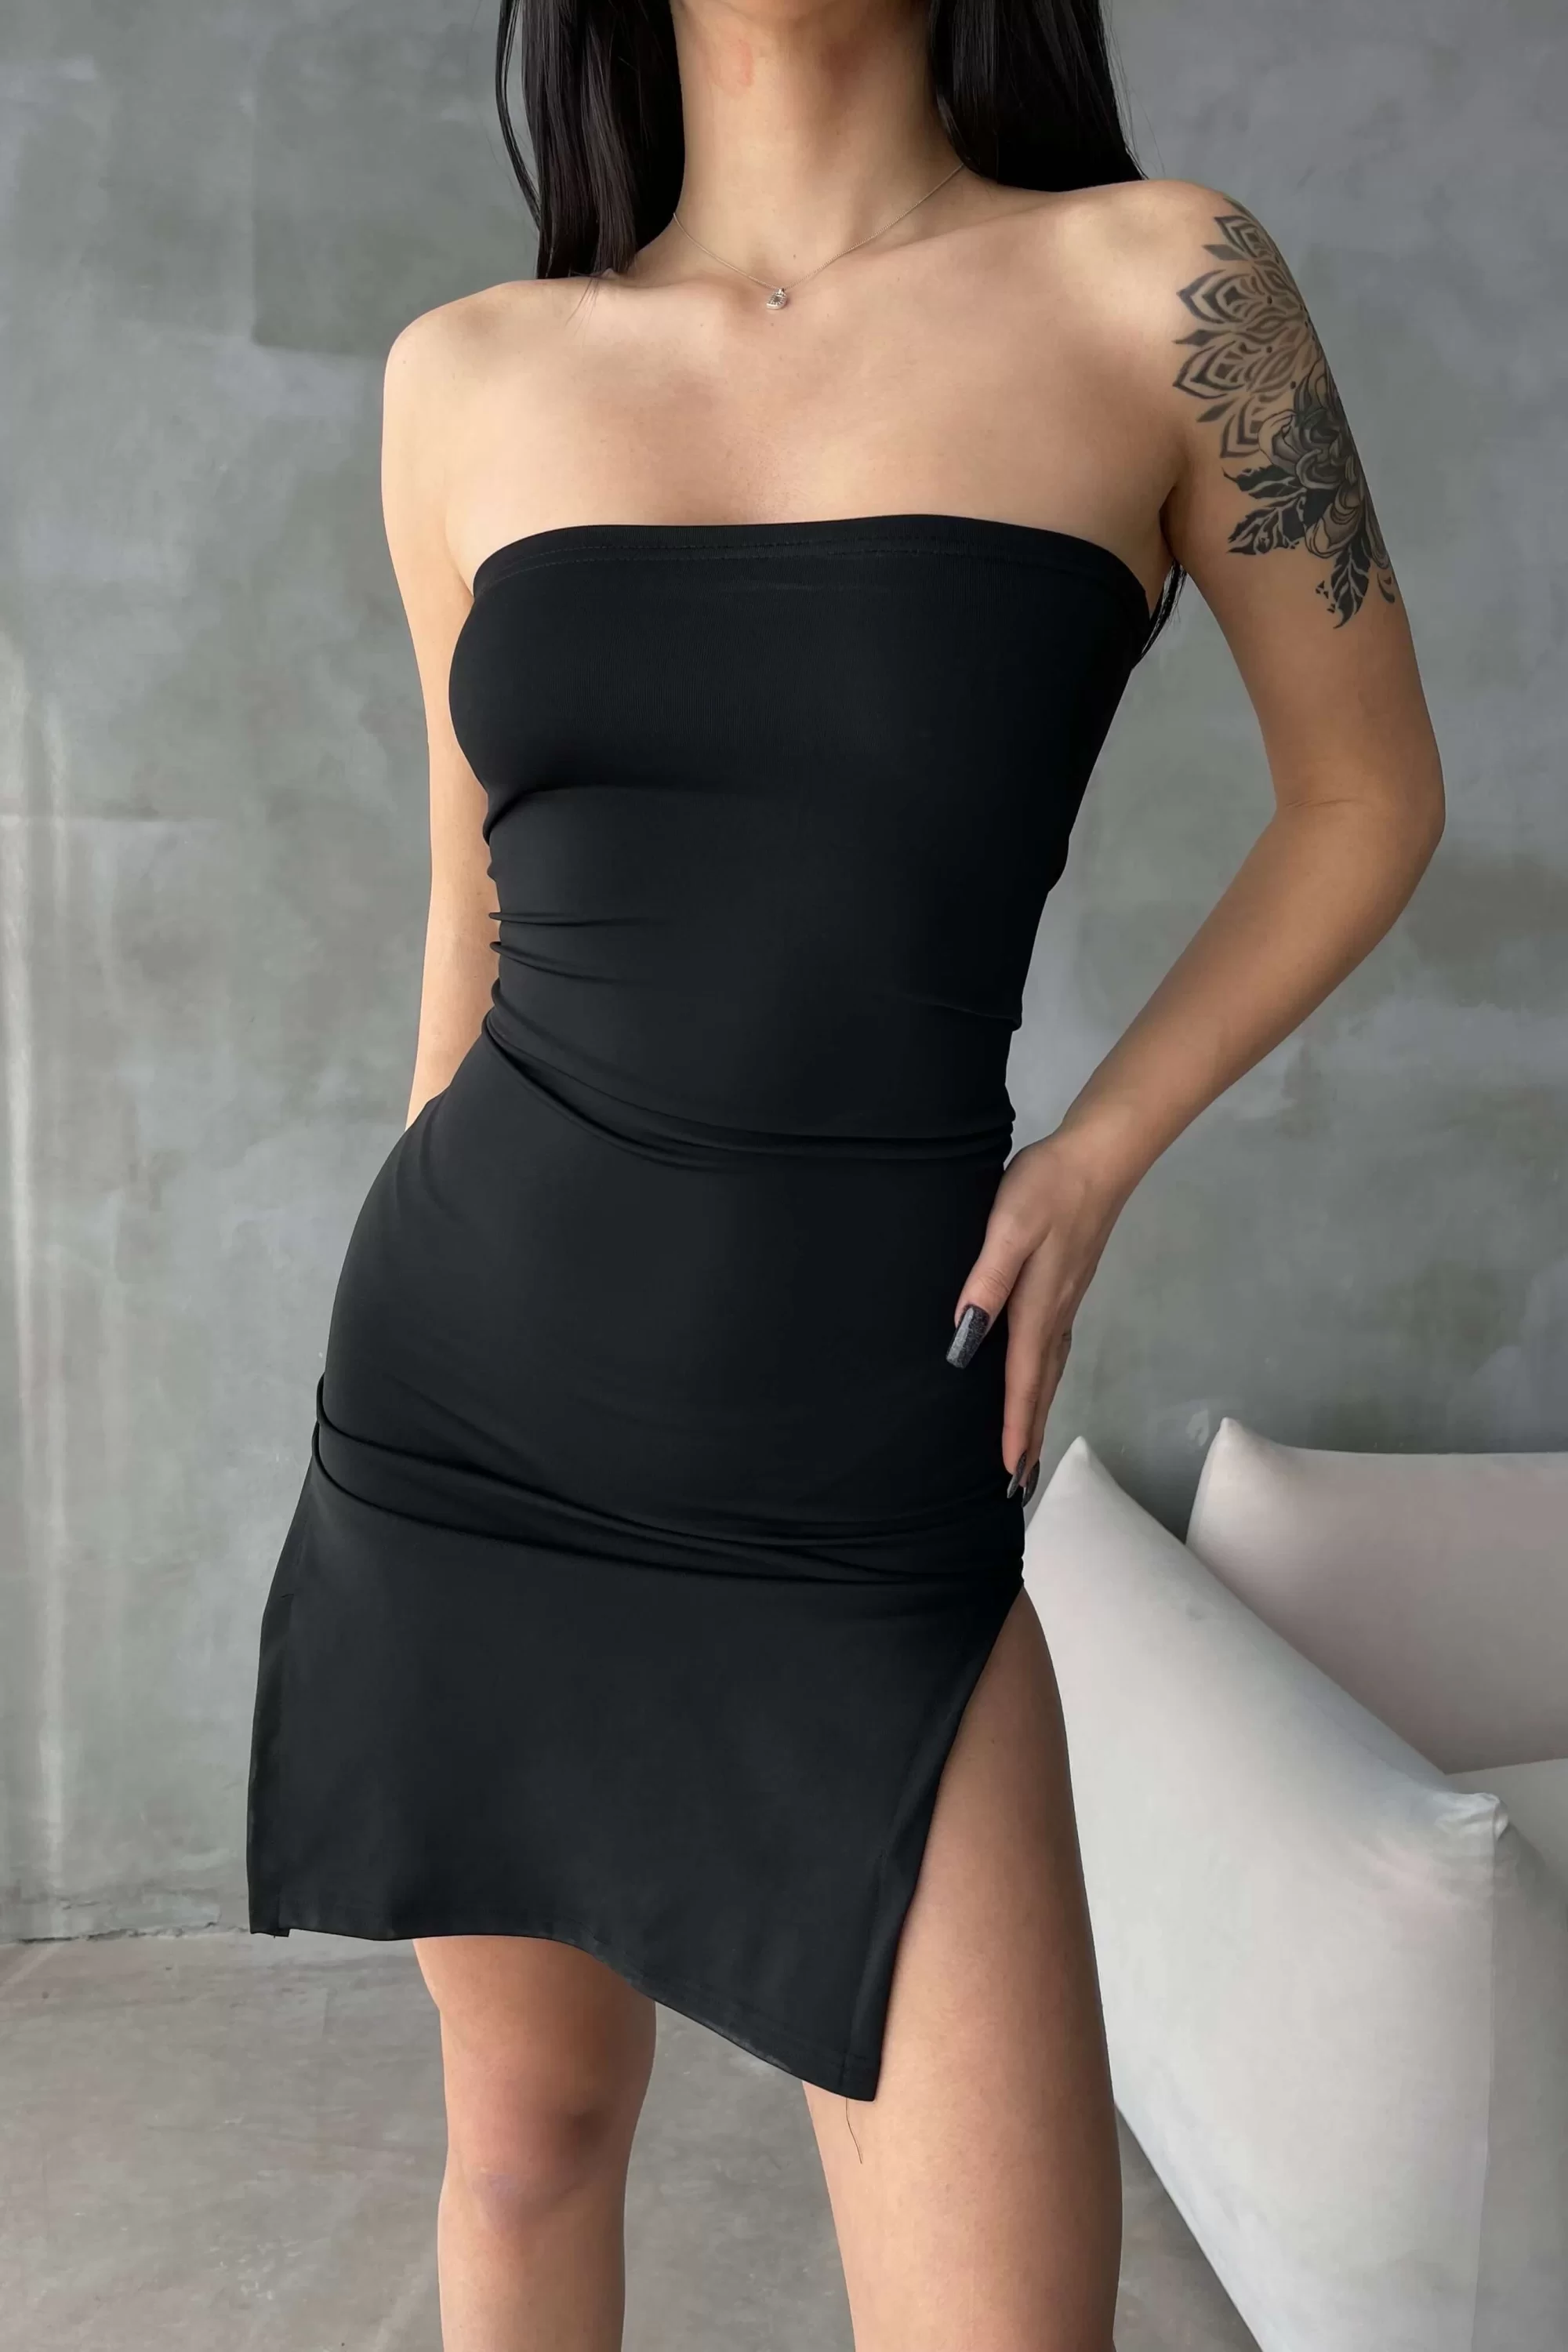 Kadın Siyah Yırtmaçlı Straplez Elbise 0956-2013